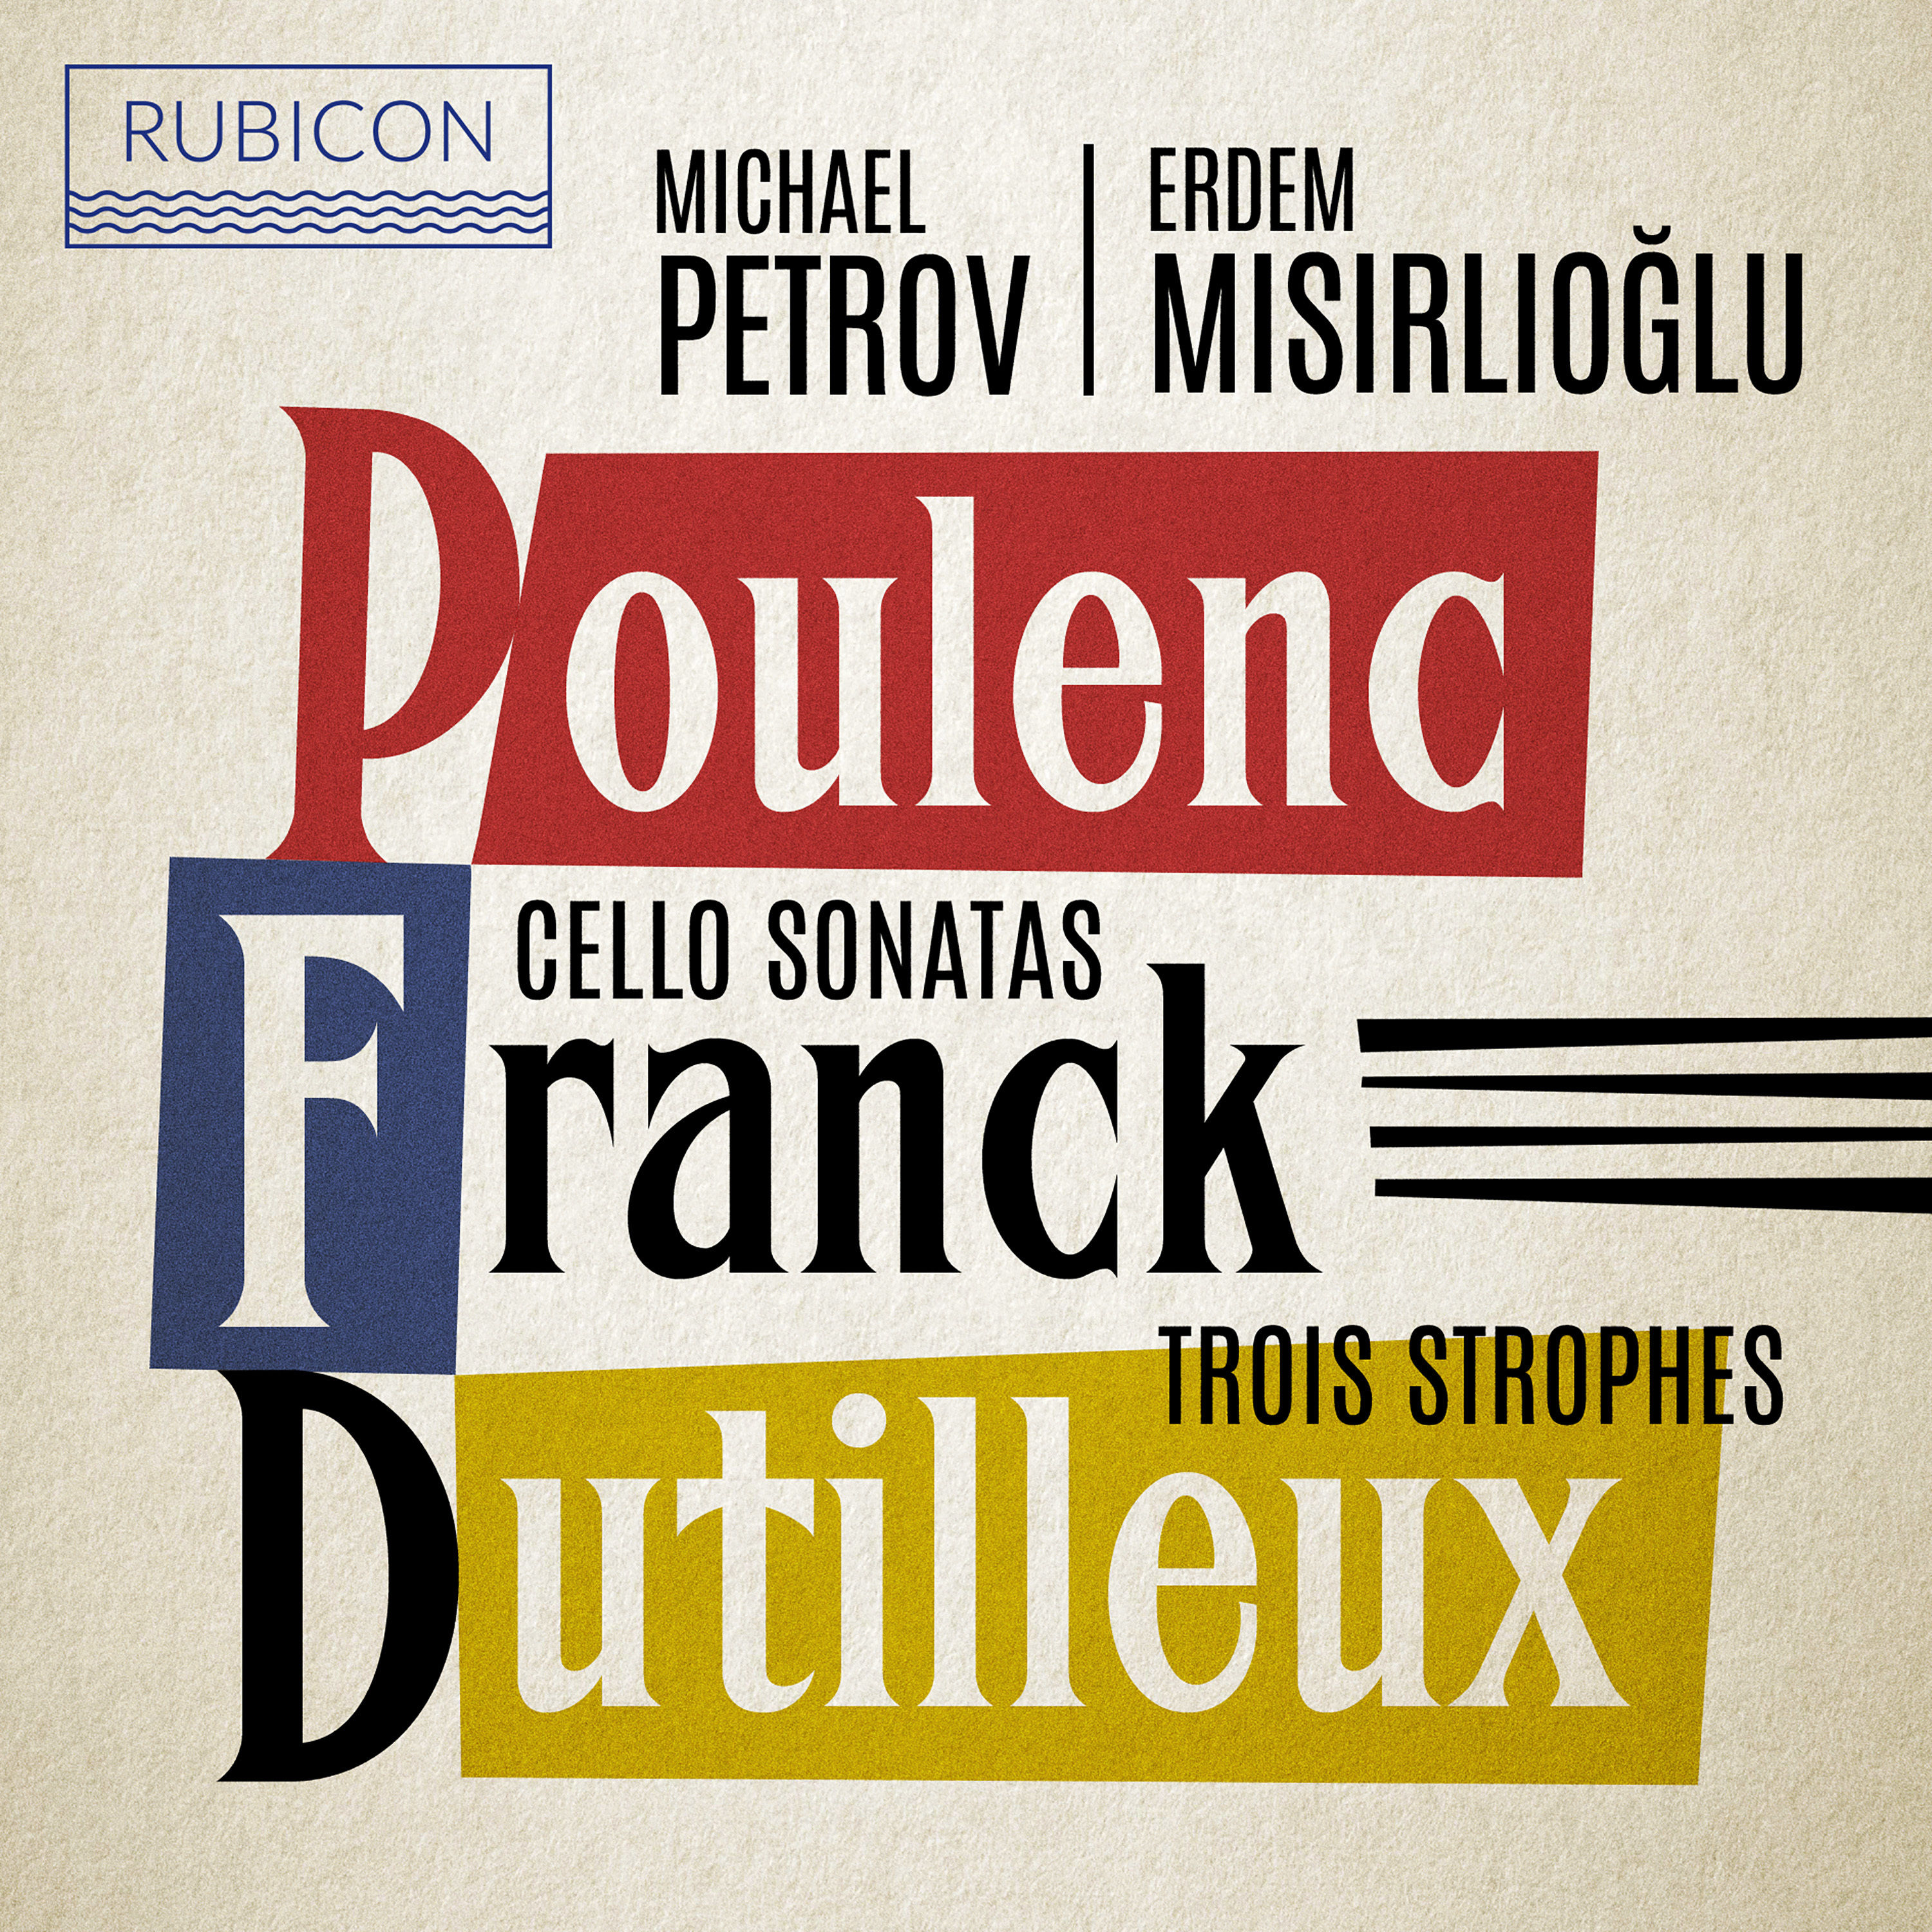 Erdem Misirlioglu - Poulenc, Franck: Cello Sonatas - Dutilleux: Trois Strophes (2021) [FLAC 24bit/96kHz]